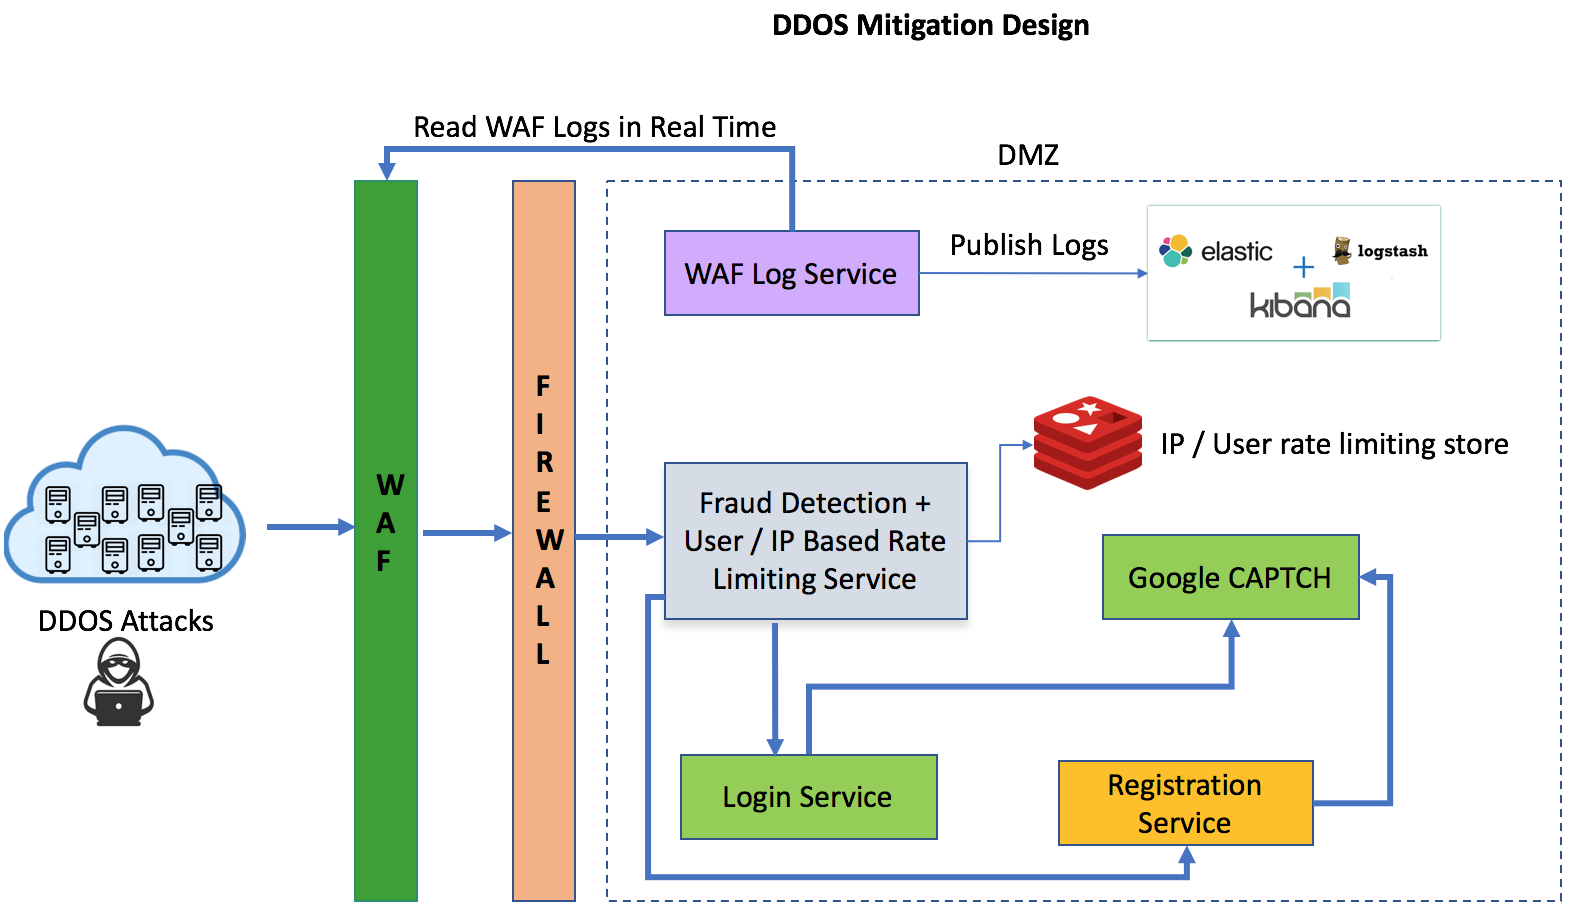 DDOS Attack mitigation